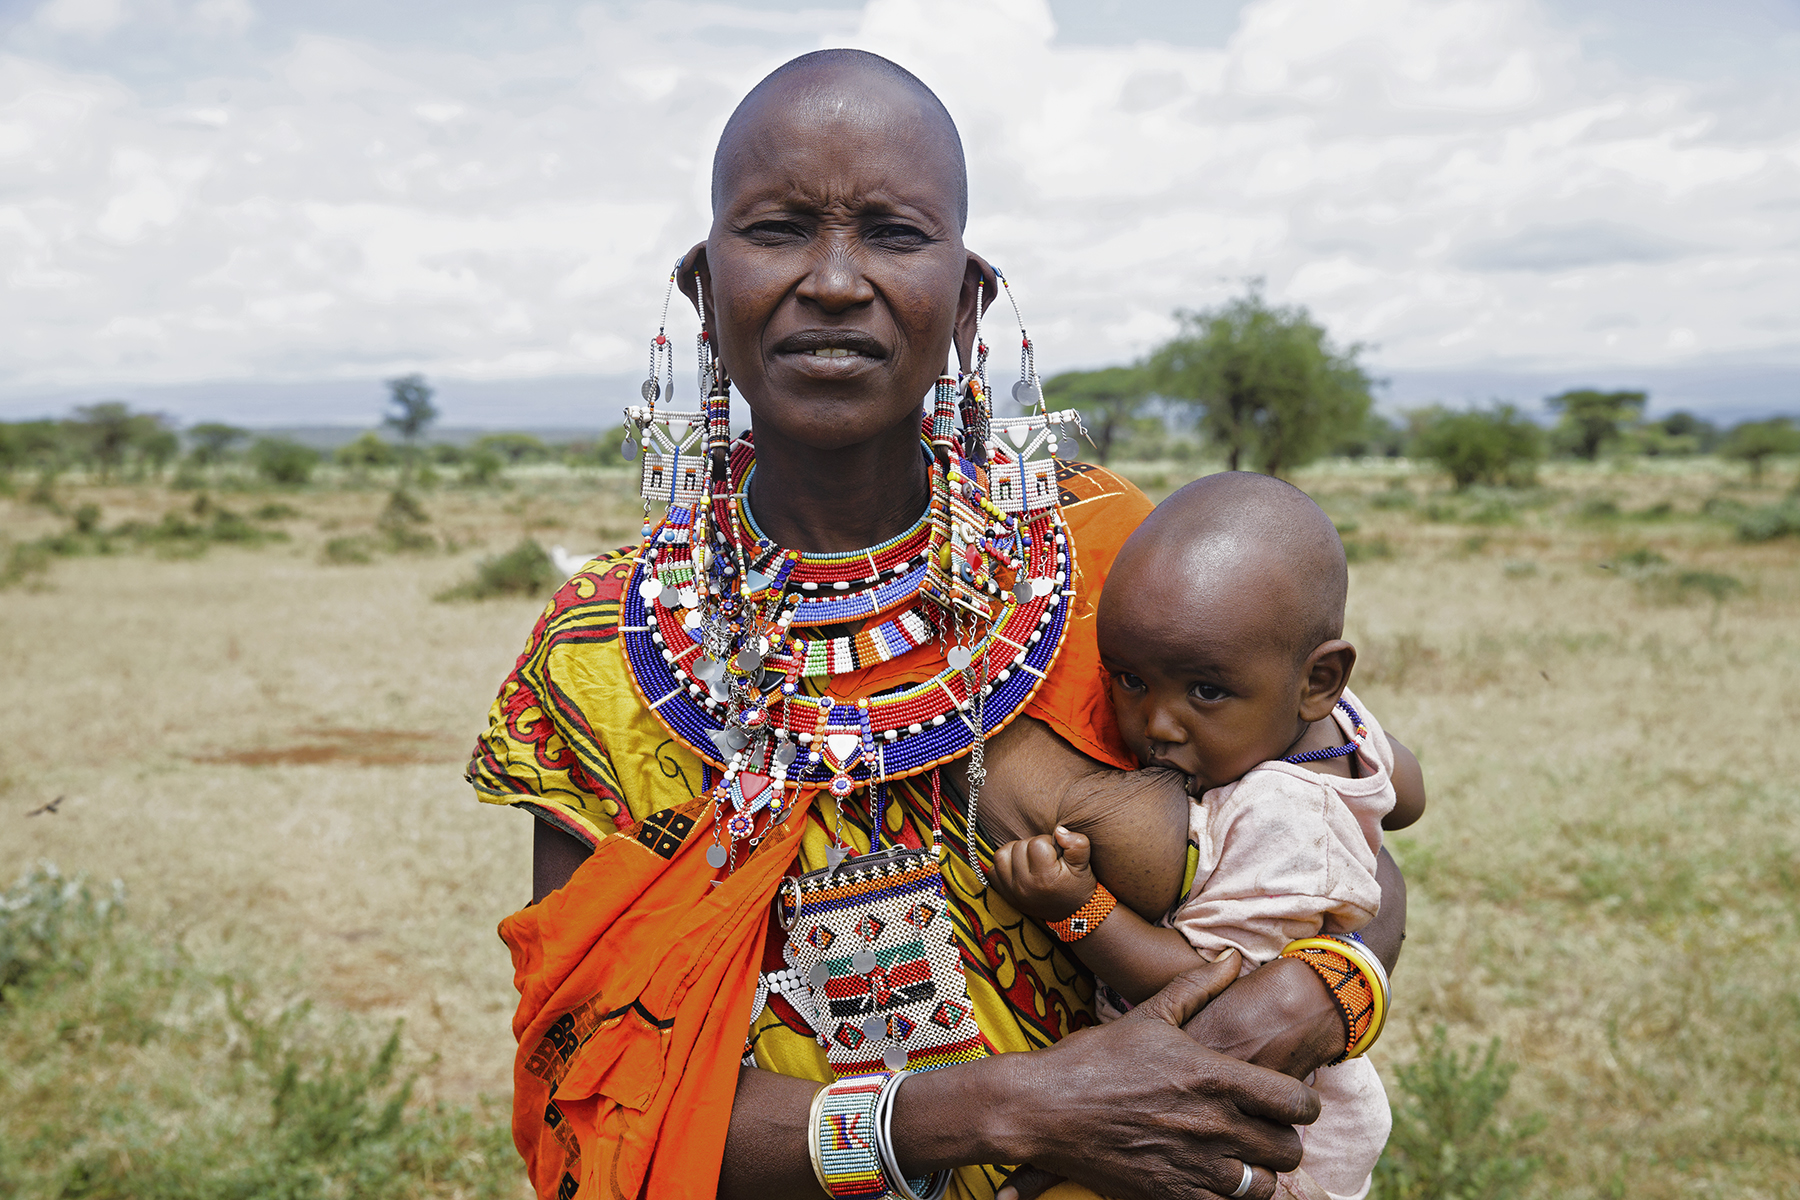 PHOTO: Loolei poses while breastfeeding in Kenya.